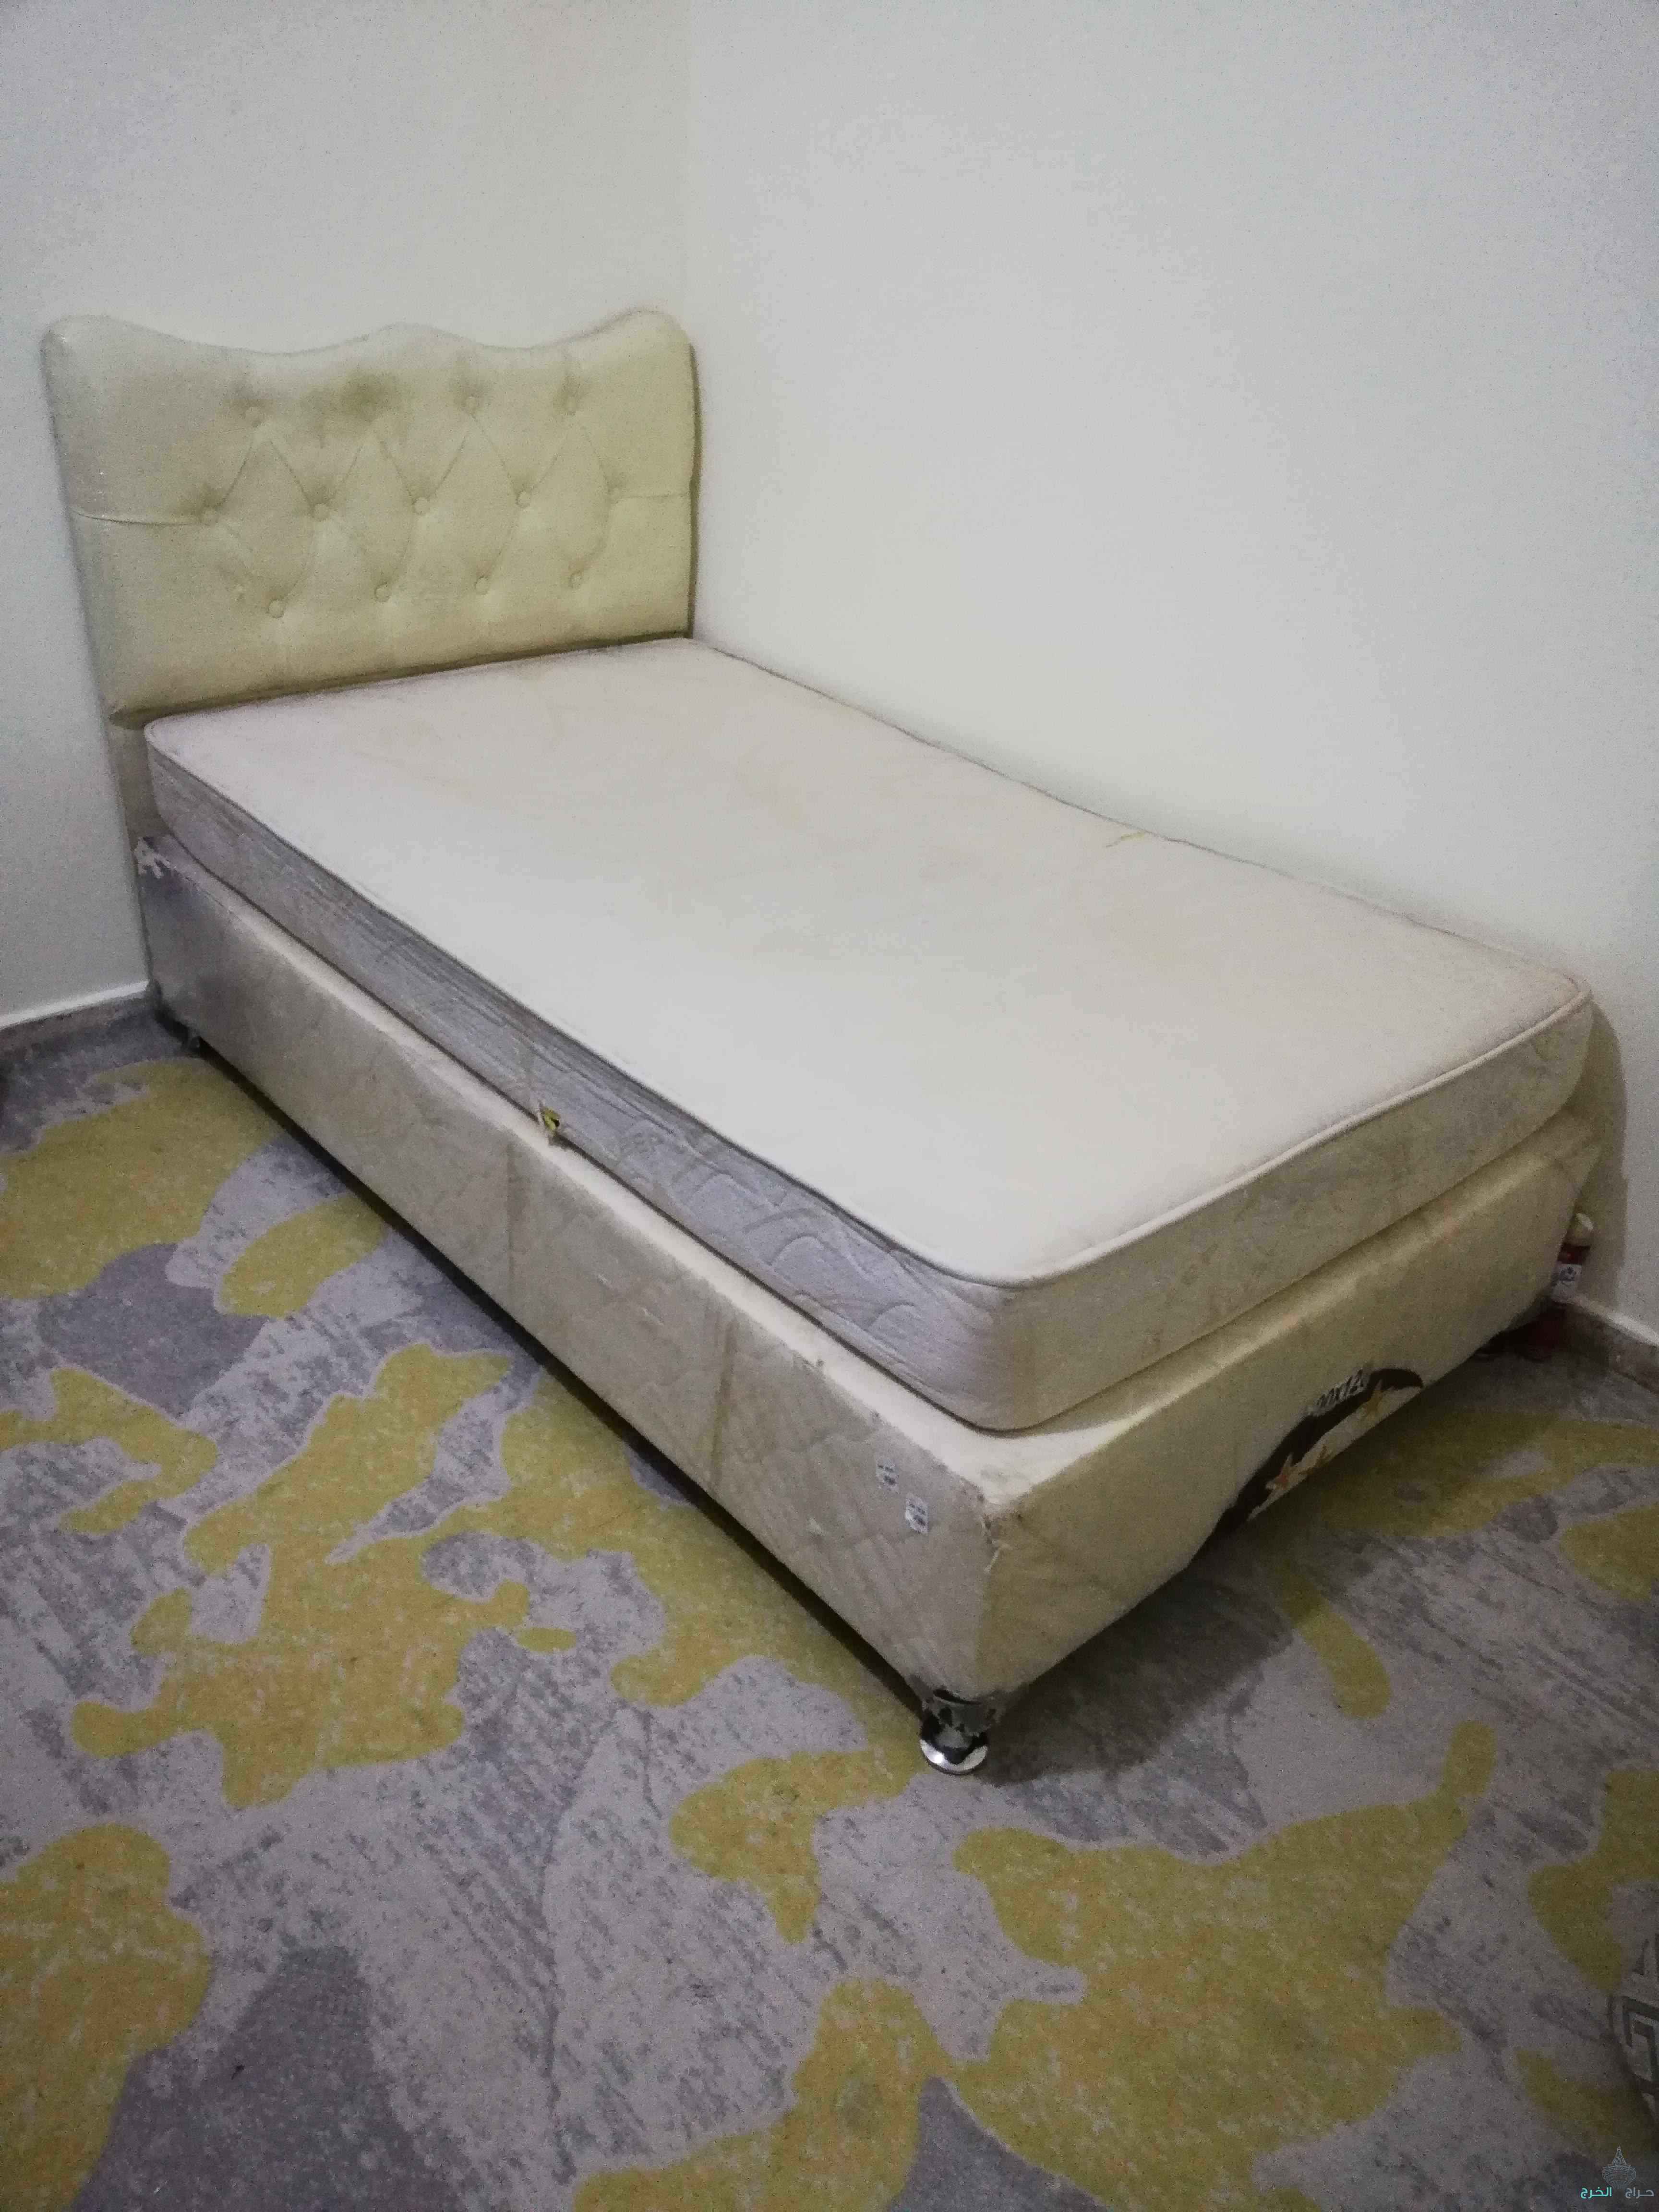 سرير مستعمل نظيف مع مرتبه للبيع الرياض حي الجزيره 